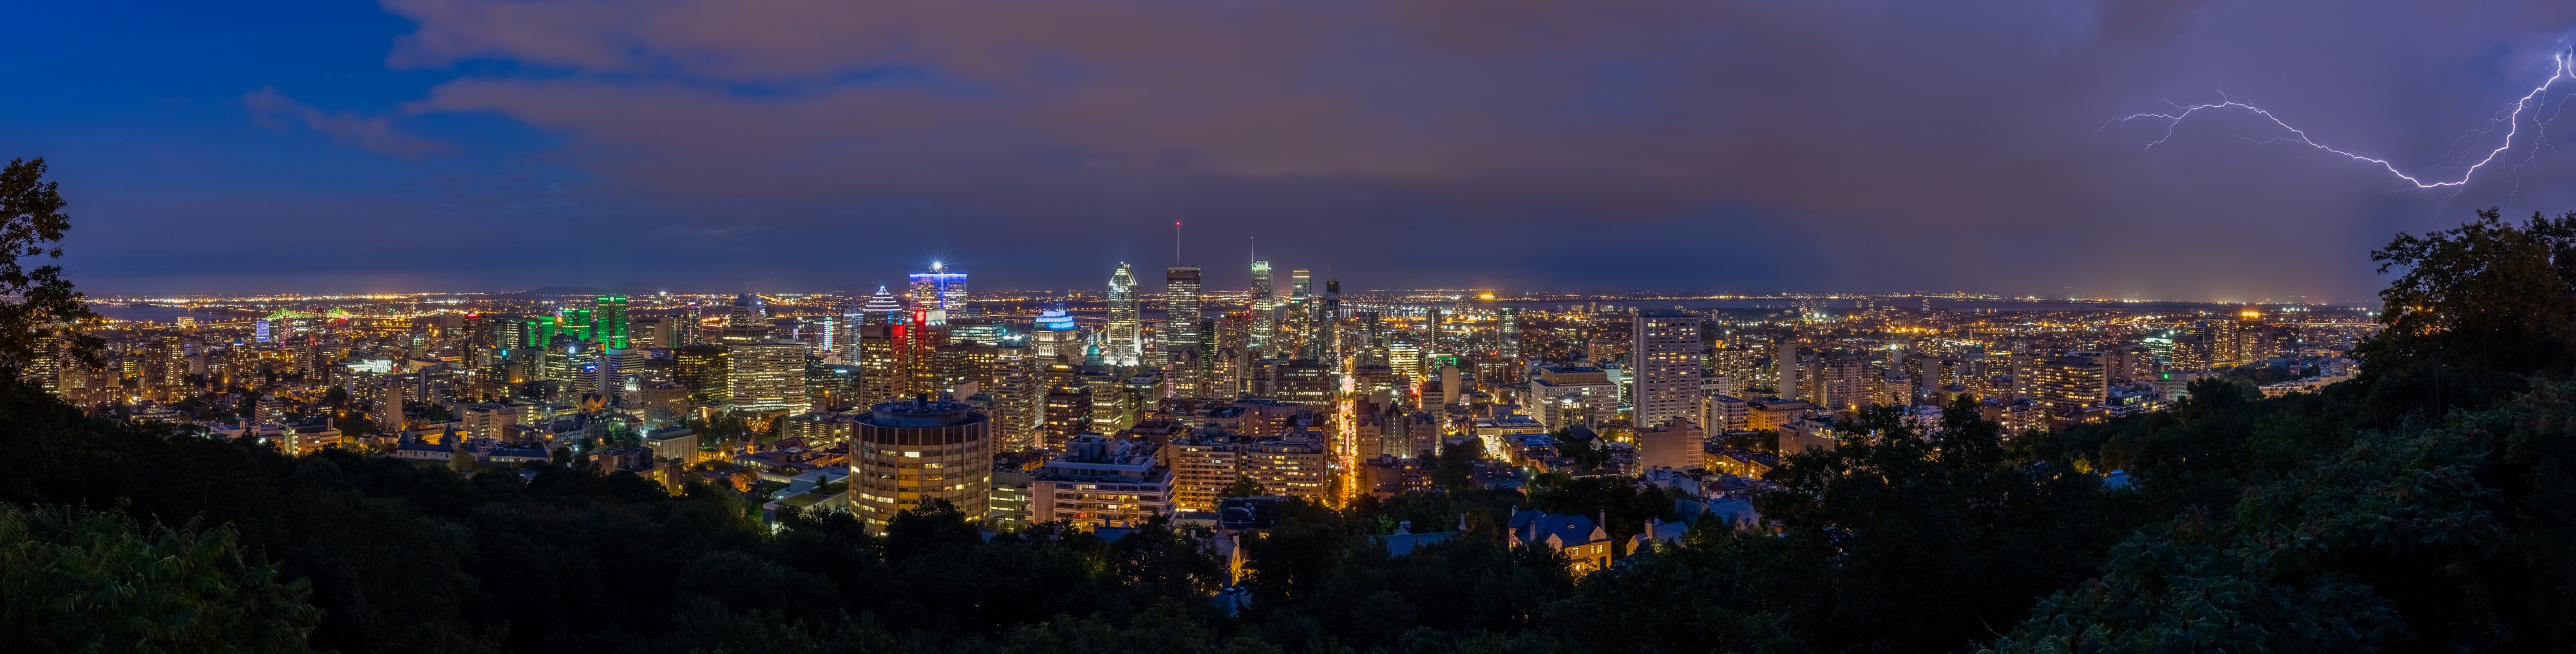 Vista de Montreal desde el Monte Royal, Canadá, 2017-08-12, DD 126-137 HDR PAN